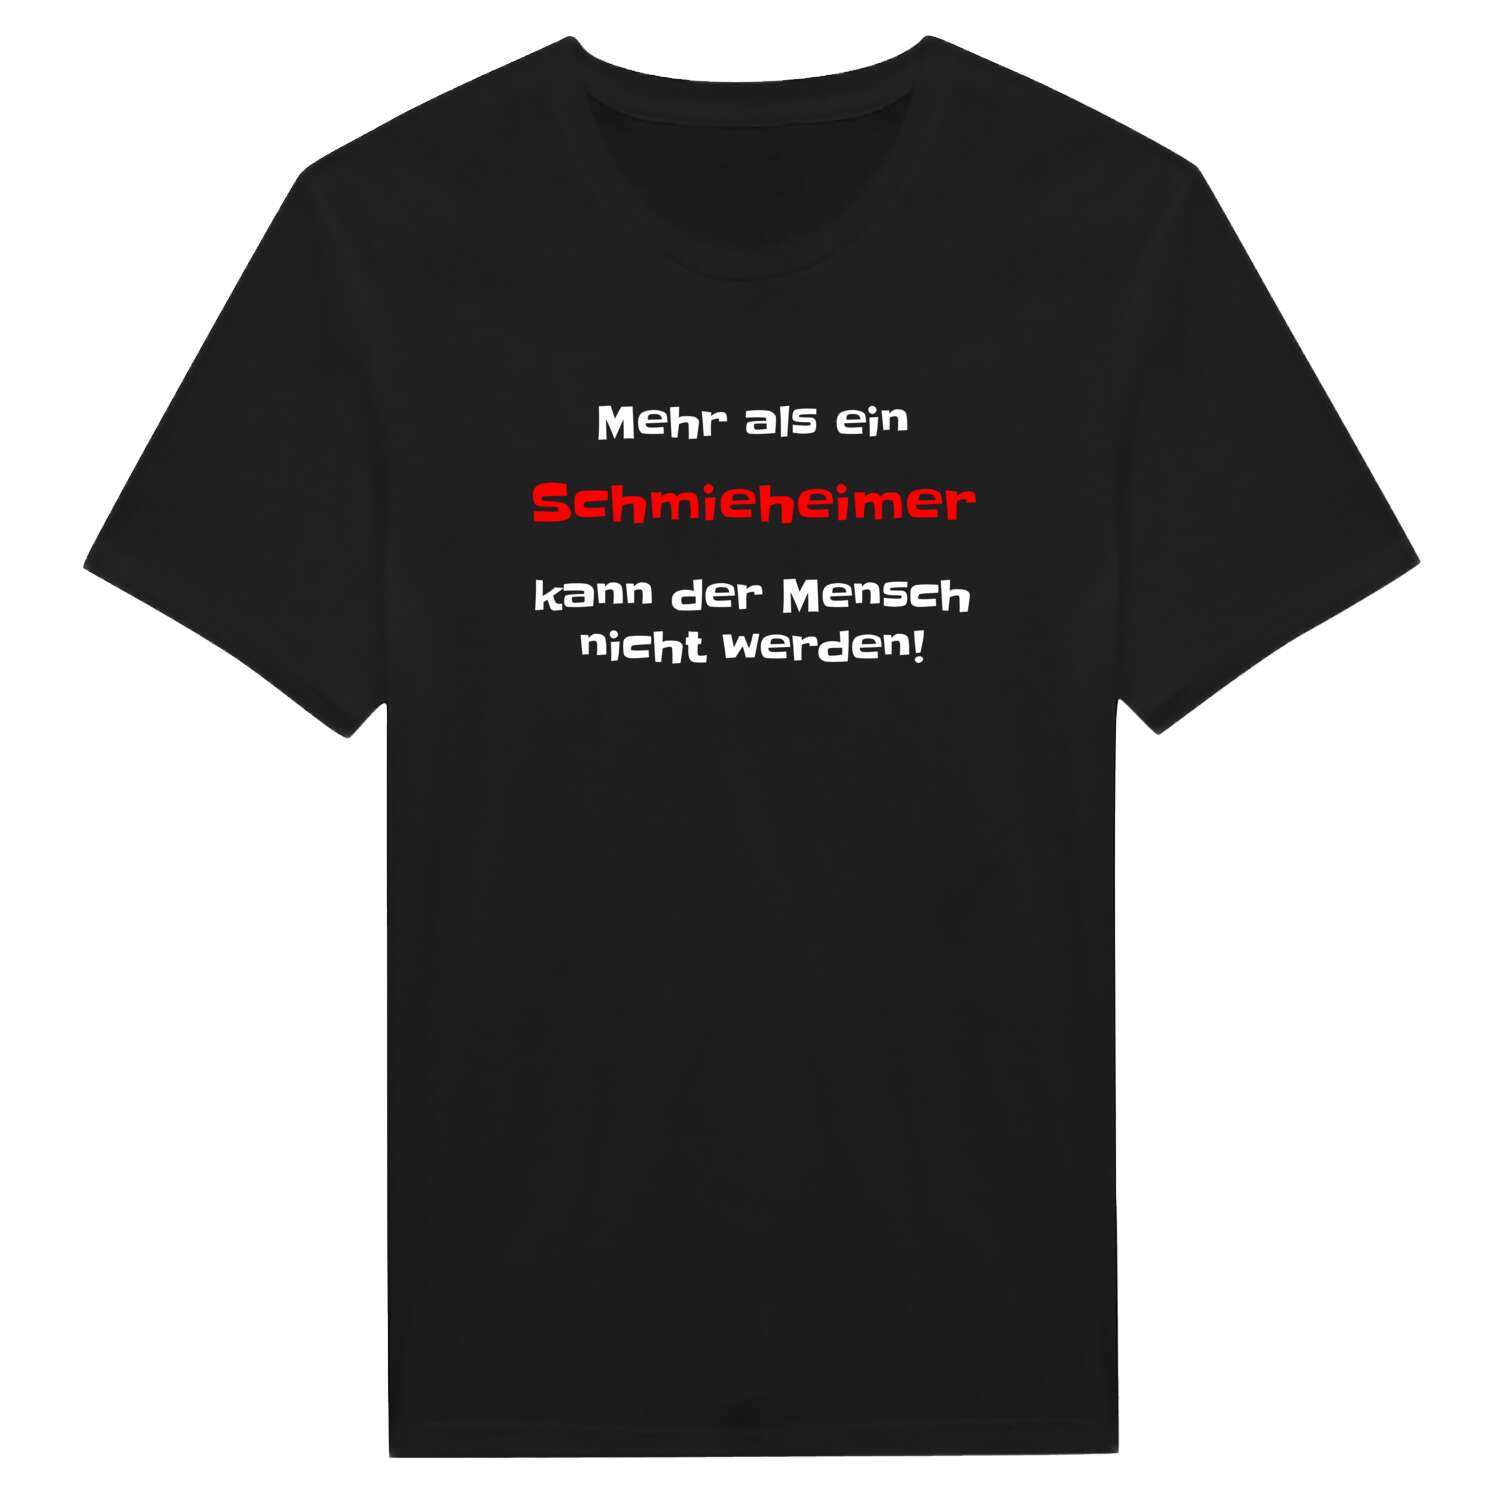 Schmieheim T-Shirt »Mehr als ein«